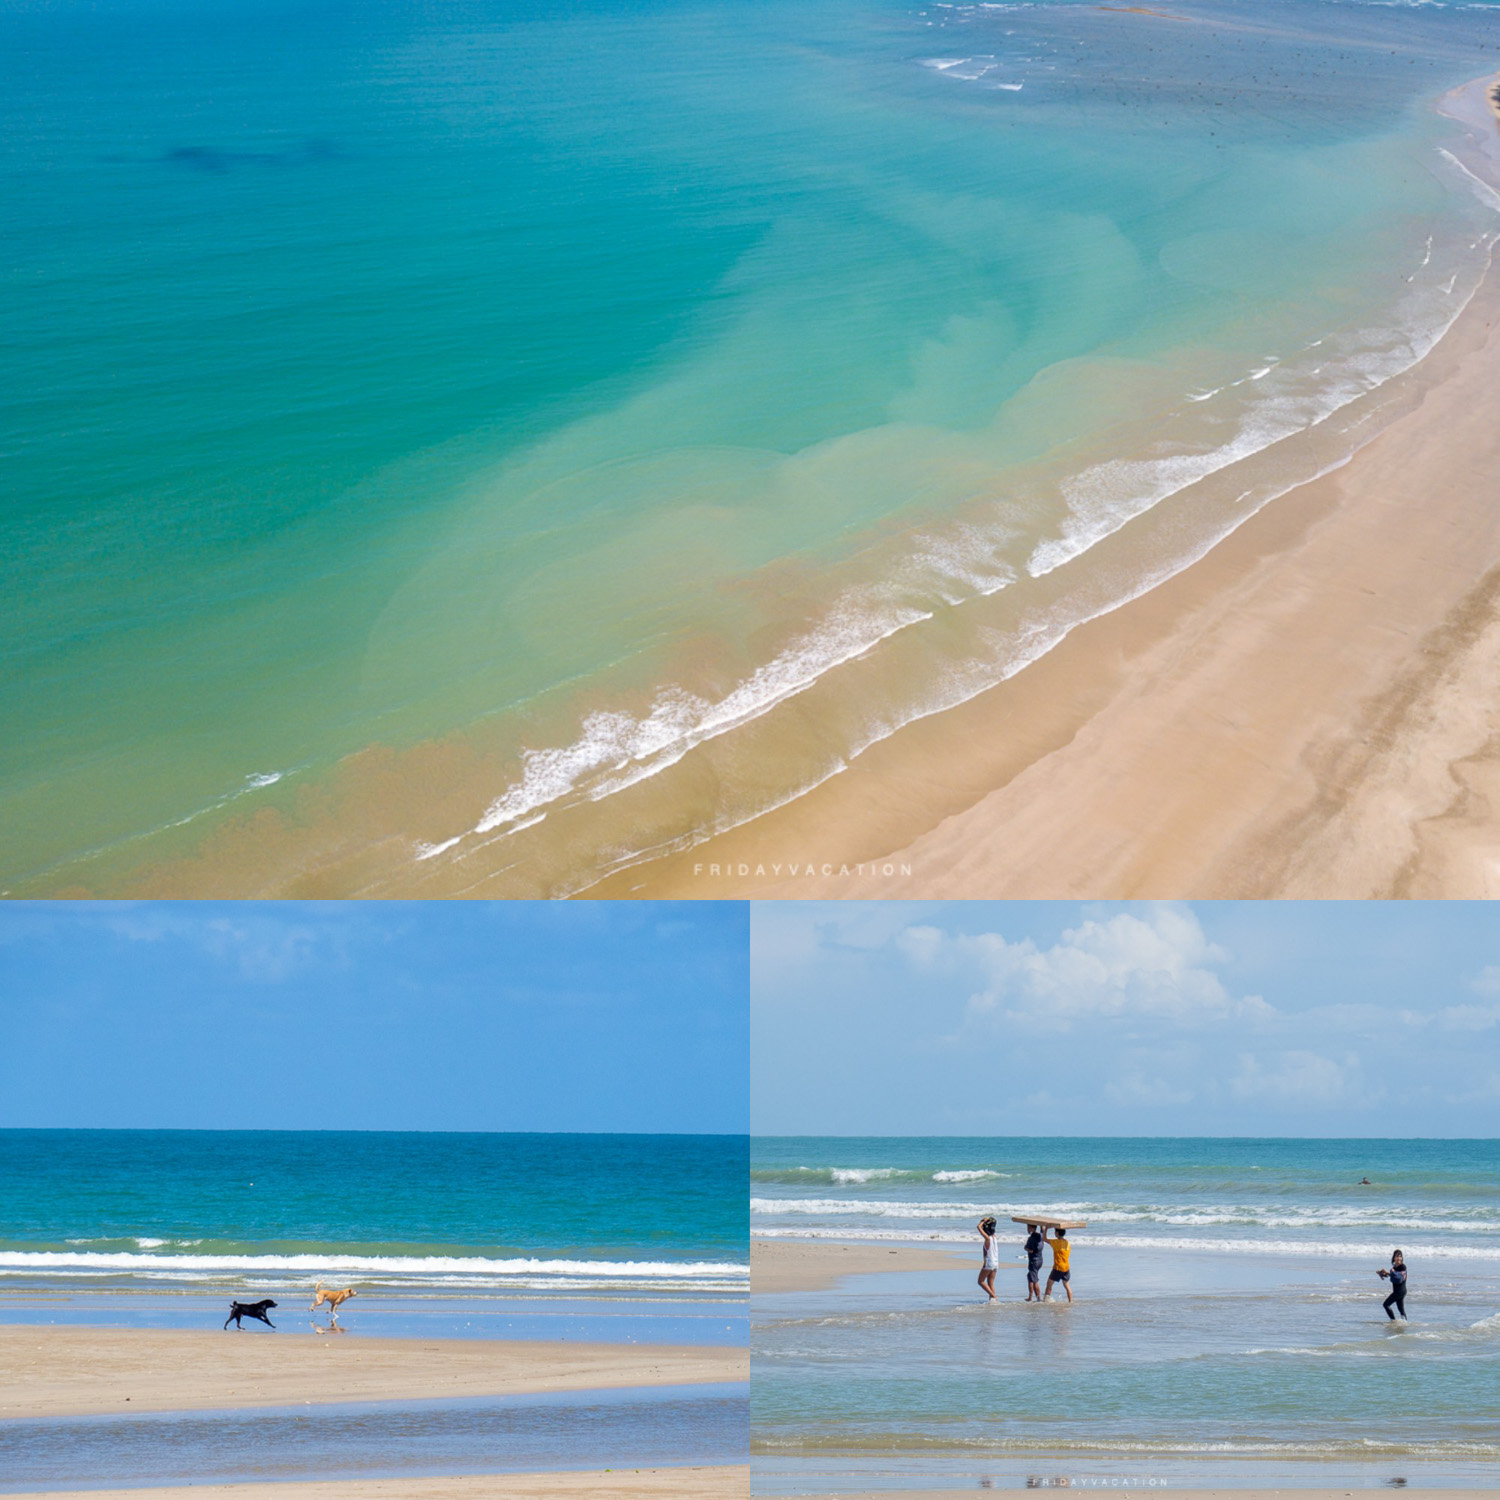 15 ชายหาดเขาหลัก-พังงา ทะเลสวย น้ำใส ทรายขาว อัพเดทใหม่ น่าไปเช็คอิน 2022